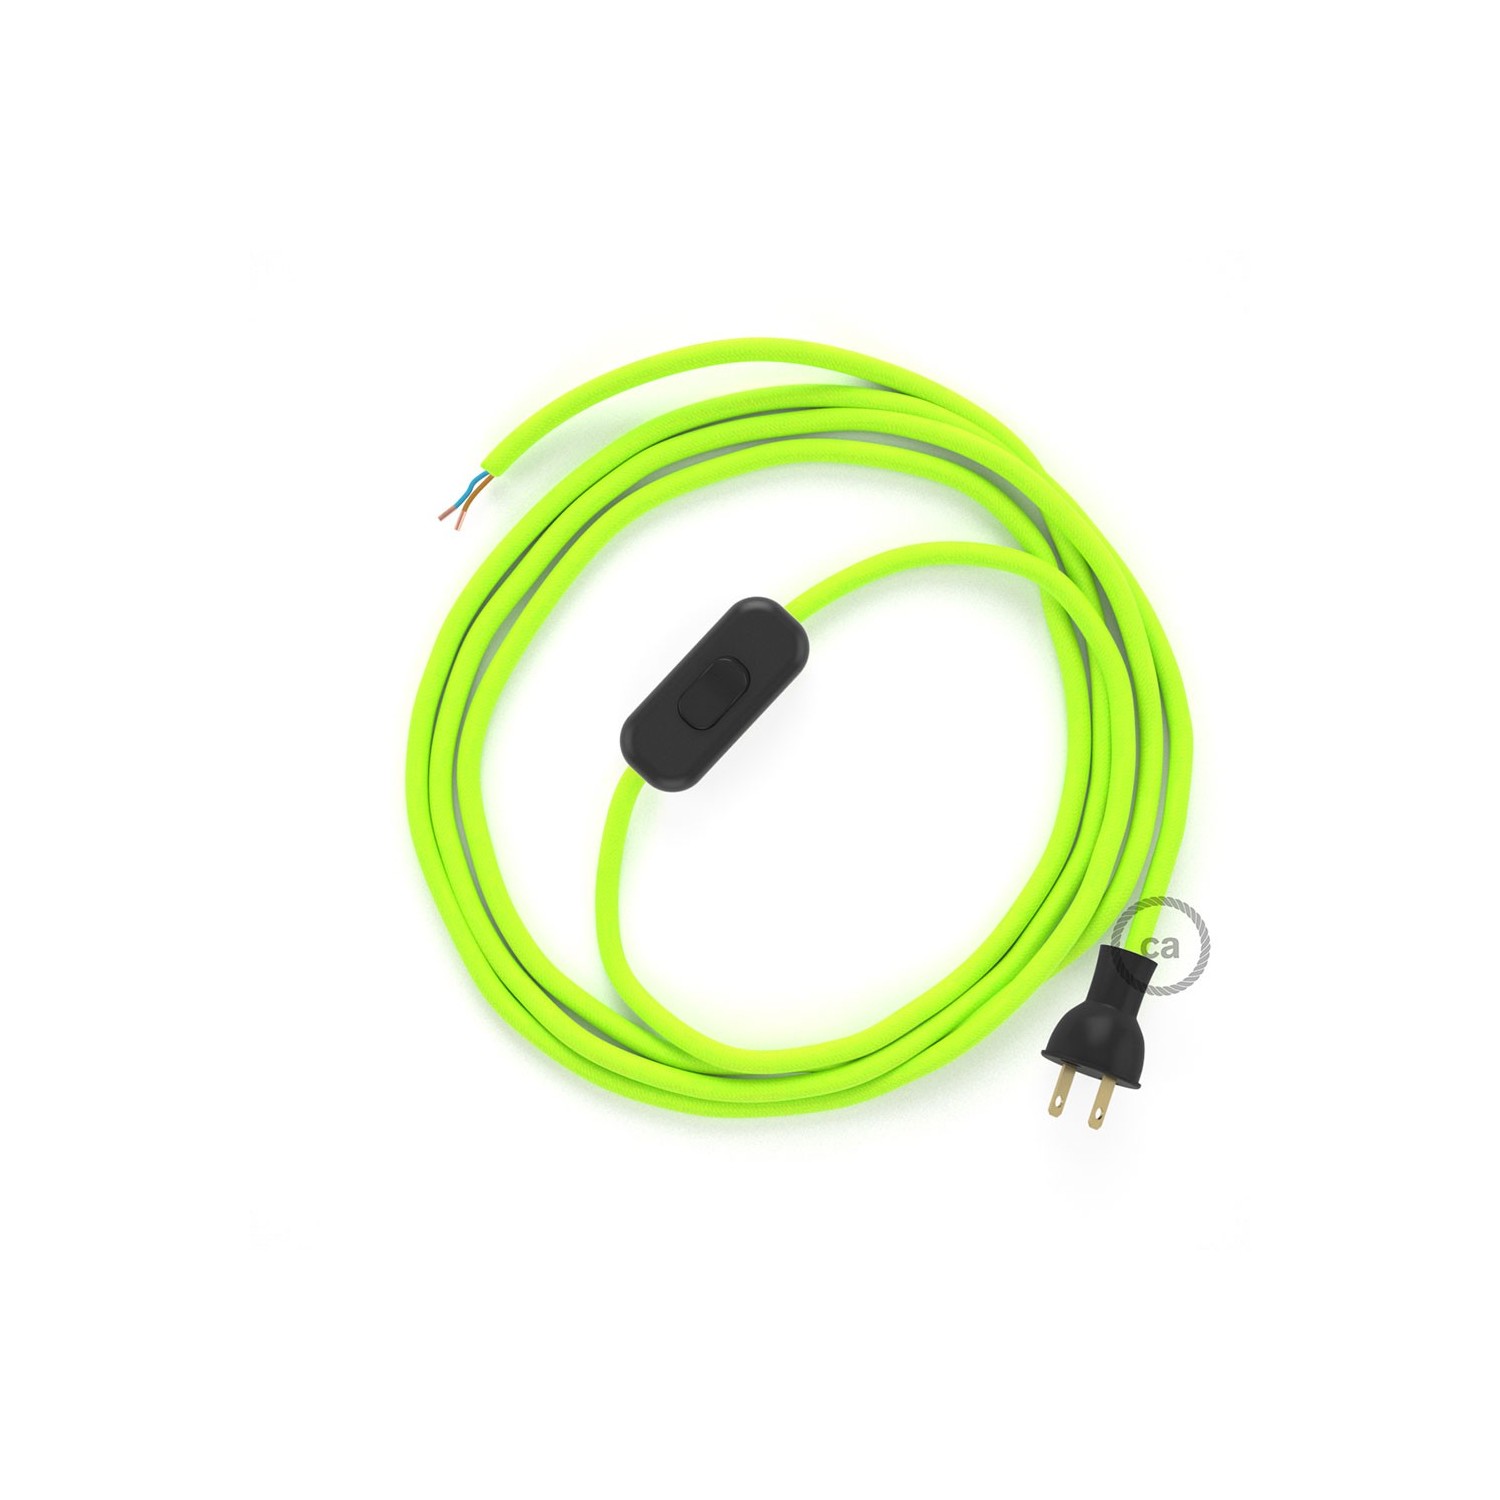 Cableado para lámpara de mesa, cable RF10 Rayón Amarillo Fluorescente 1,8 m. Elige el color de la clavija y del interruptor!